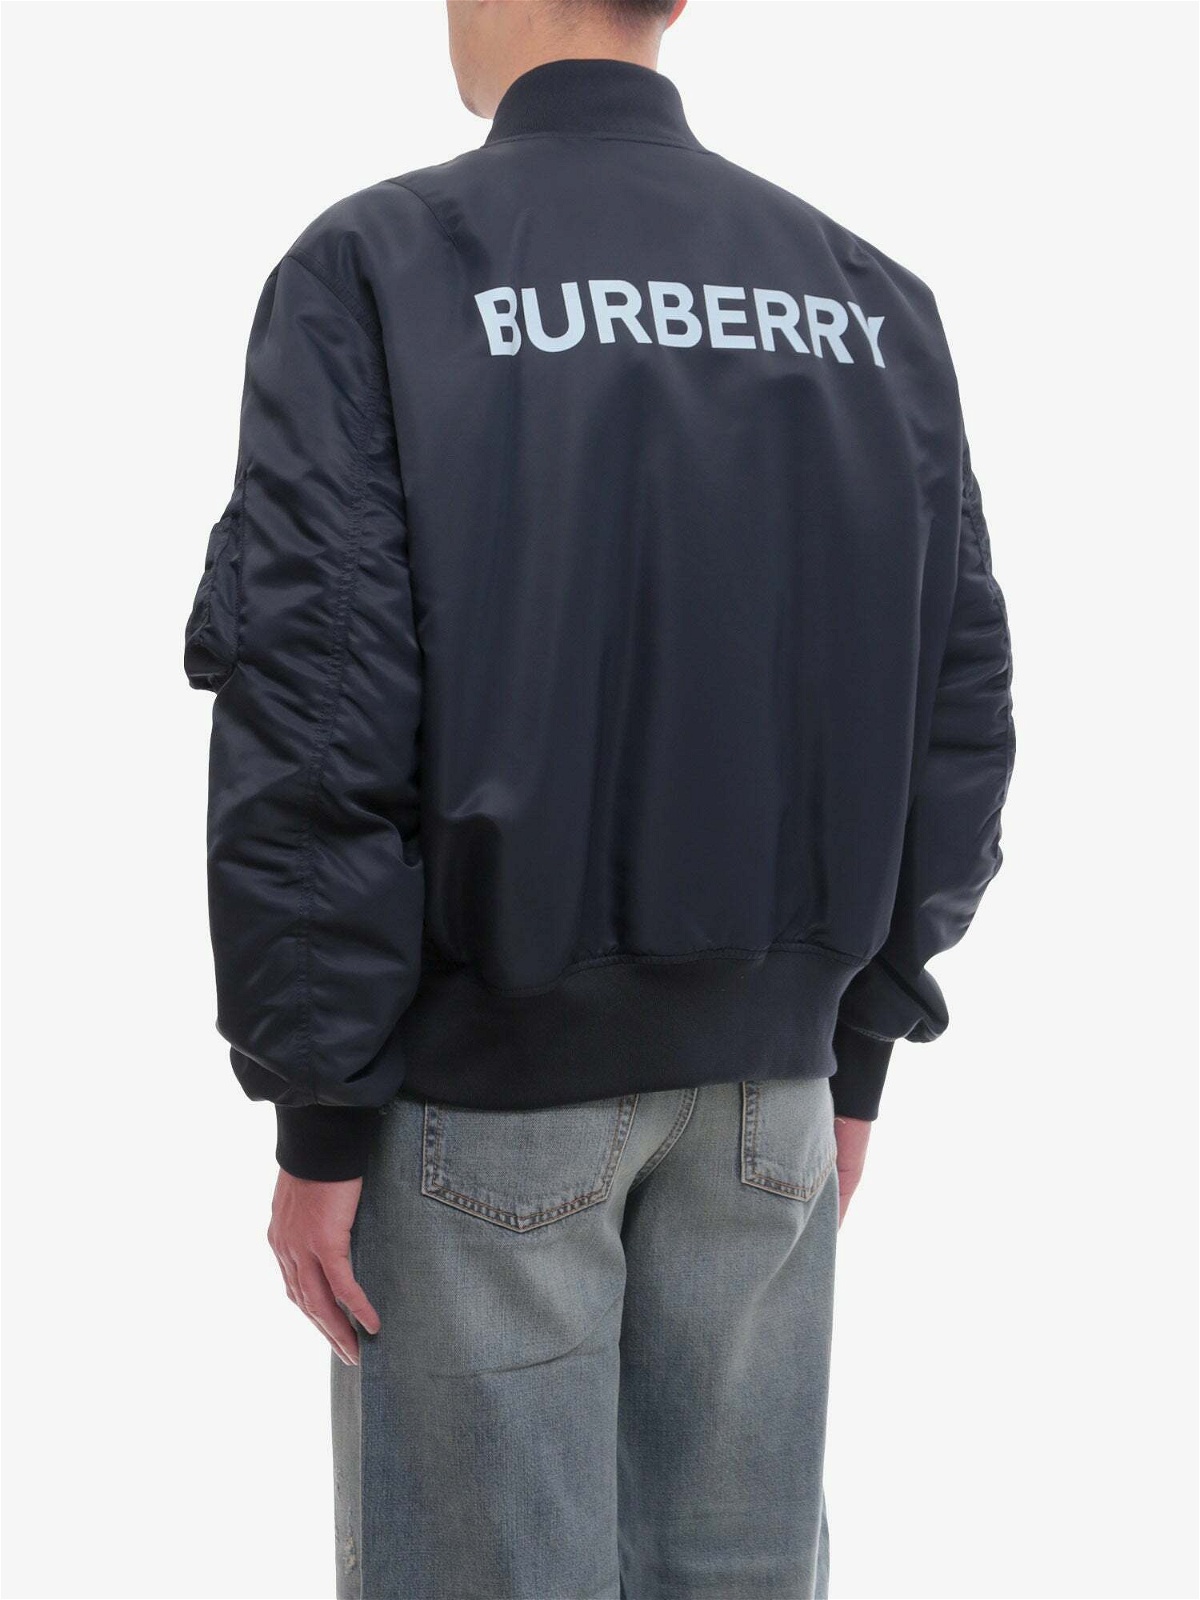 Burberry Jacket Blue Mens Burberry